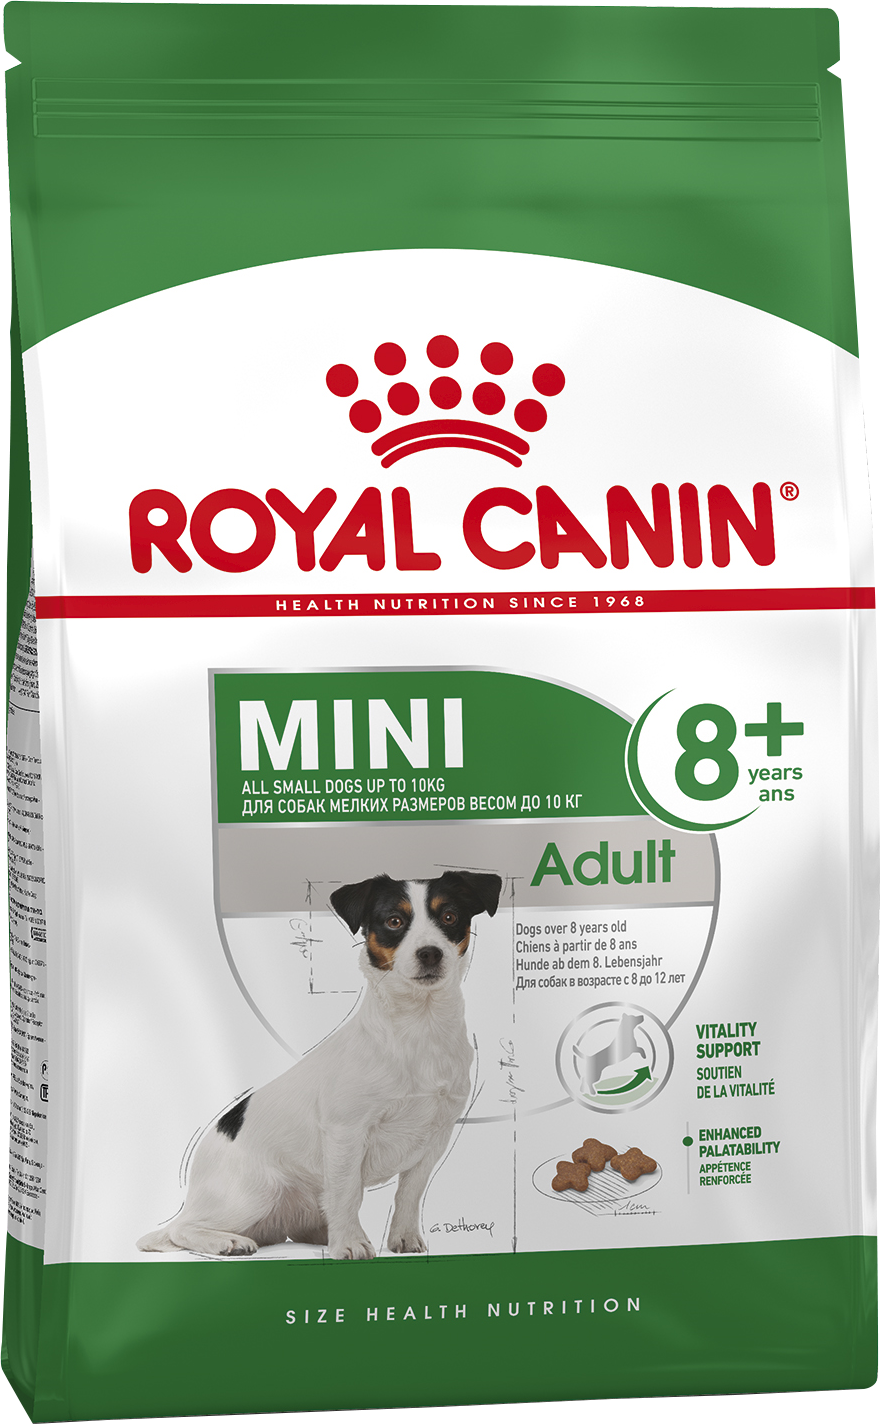 ROYAL CANIN MINI Adult +8 для стареющих собак мелких пород с 8 до 12лет